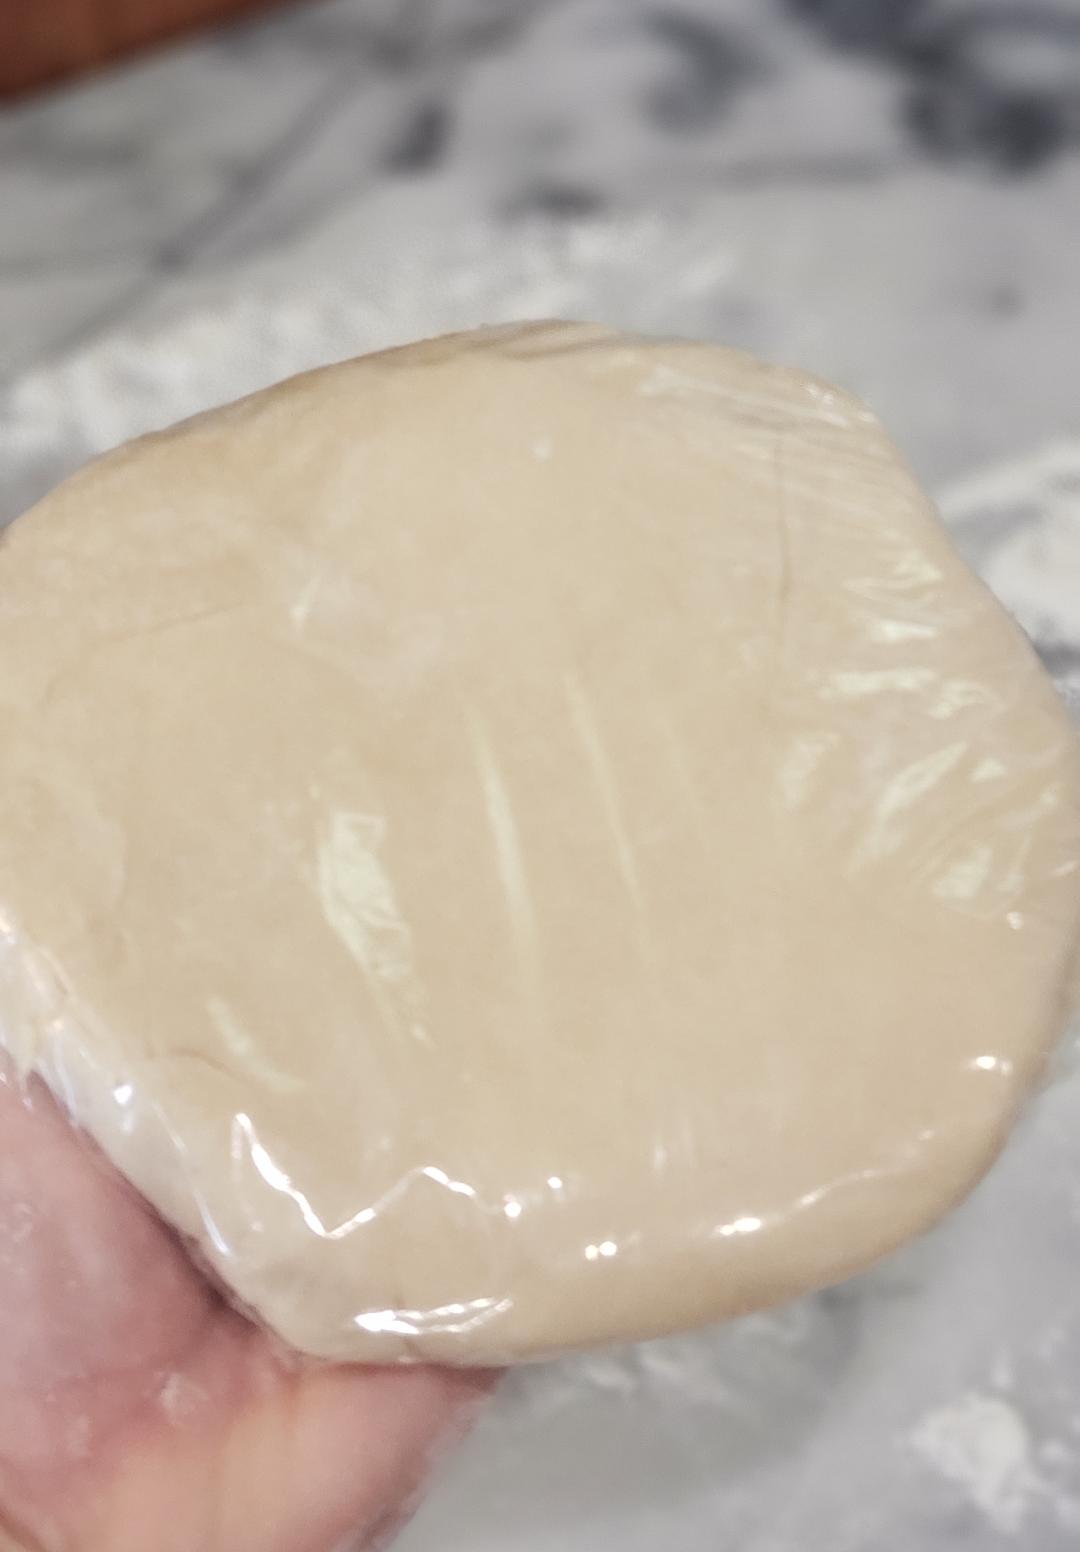 tart crust in plastic wrap